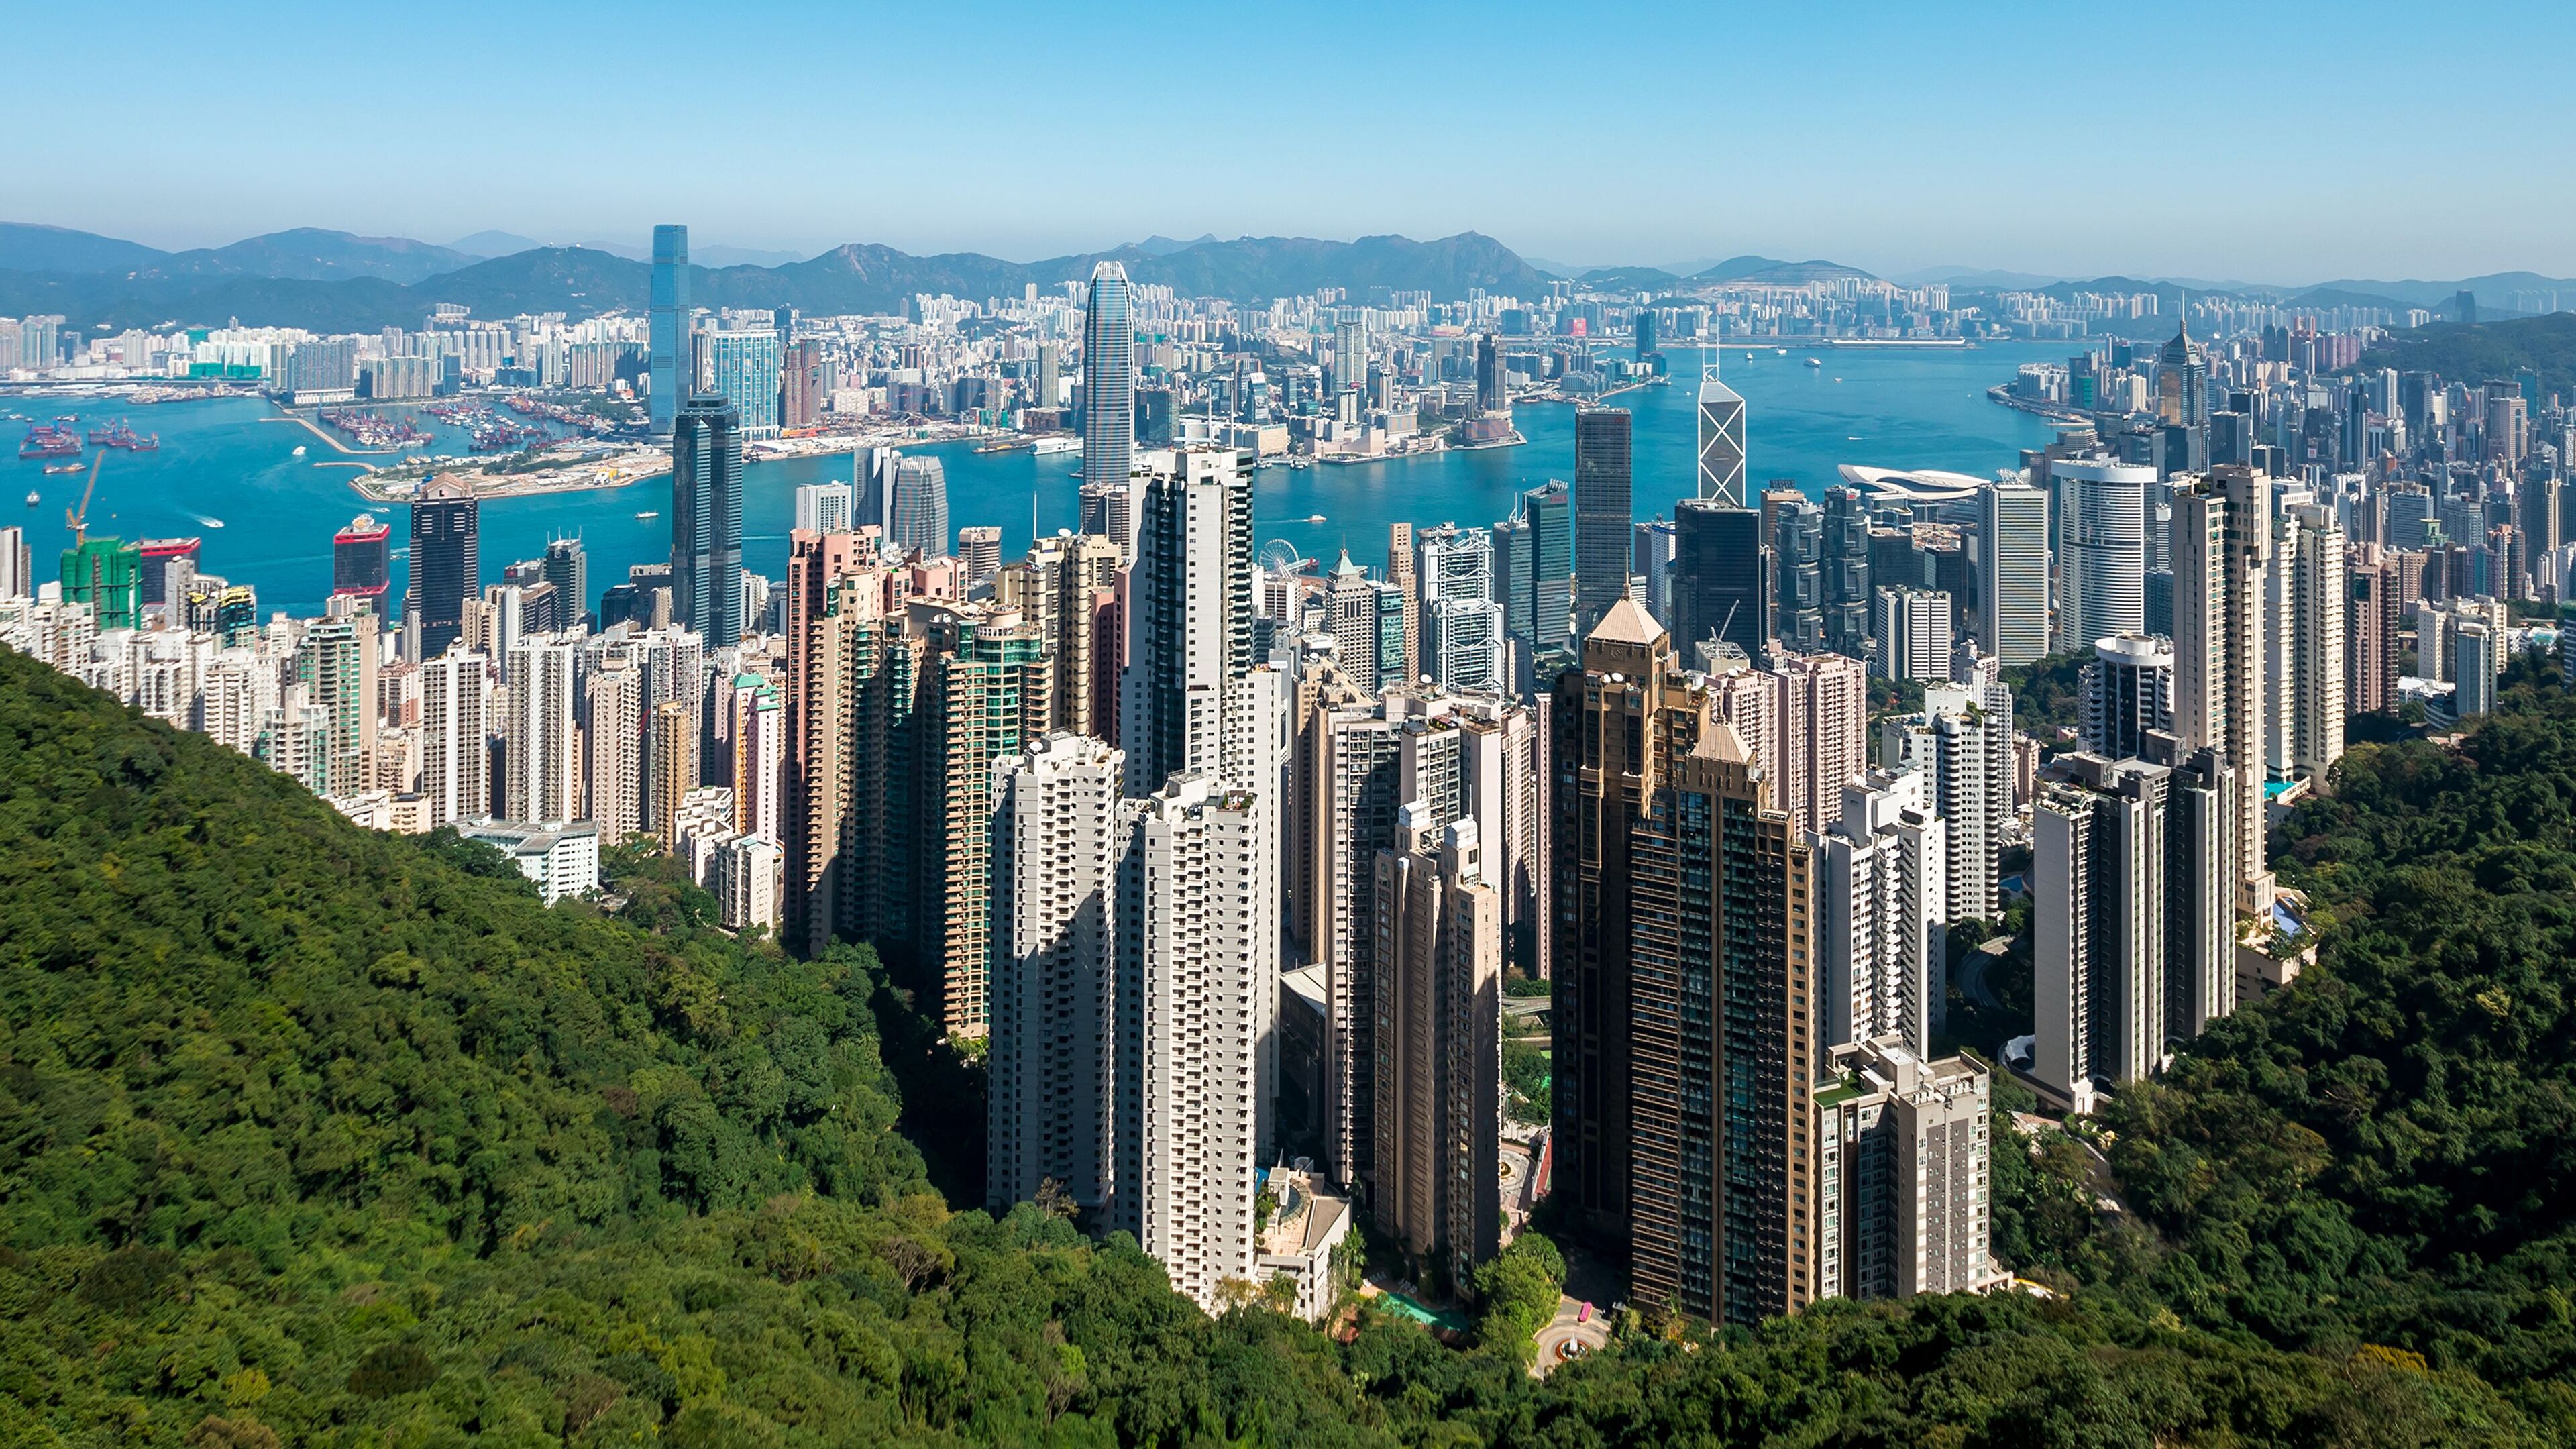 Wallpaper : city of life, Hong Kong, China 1600x1200 - 4kWallpaper -  1053339 - HD Wallpapers - WallHere